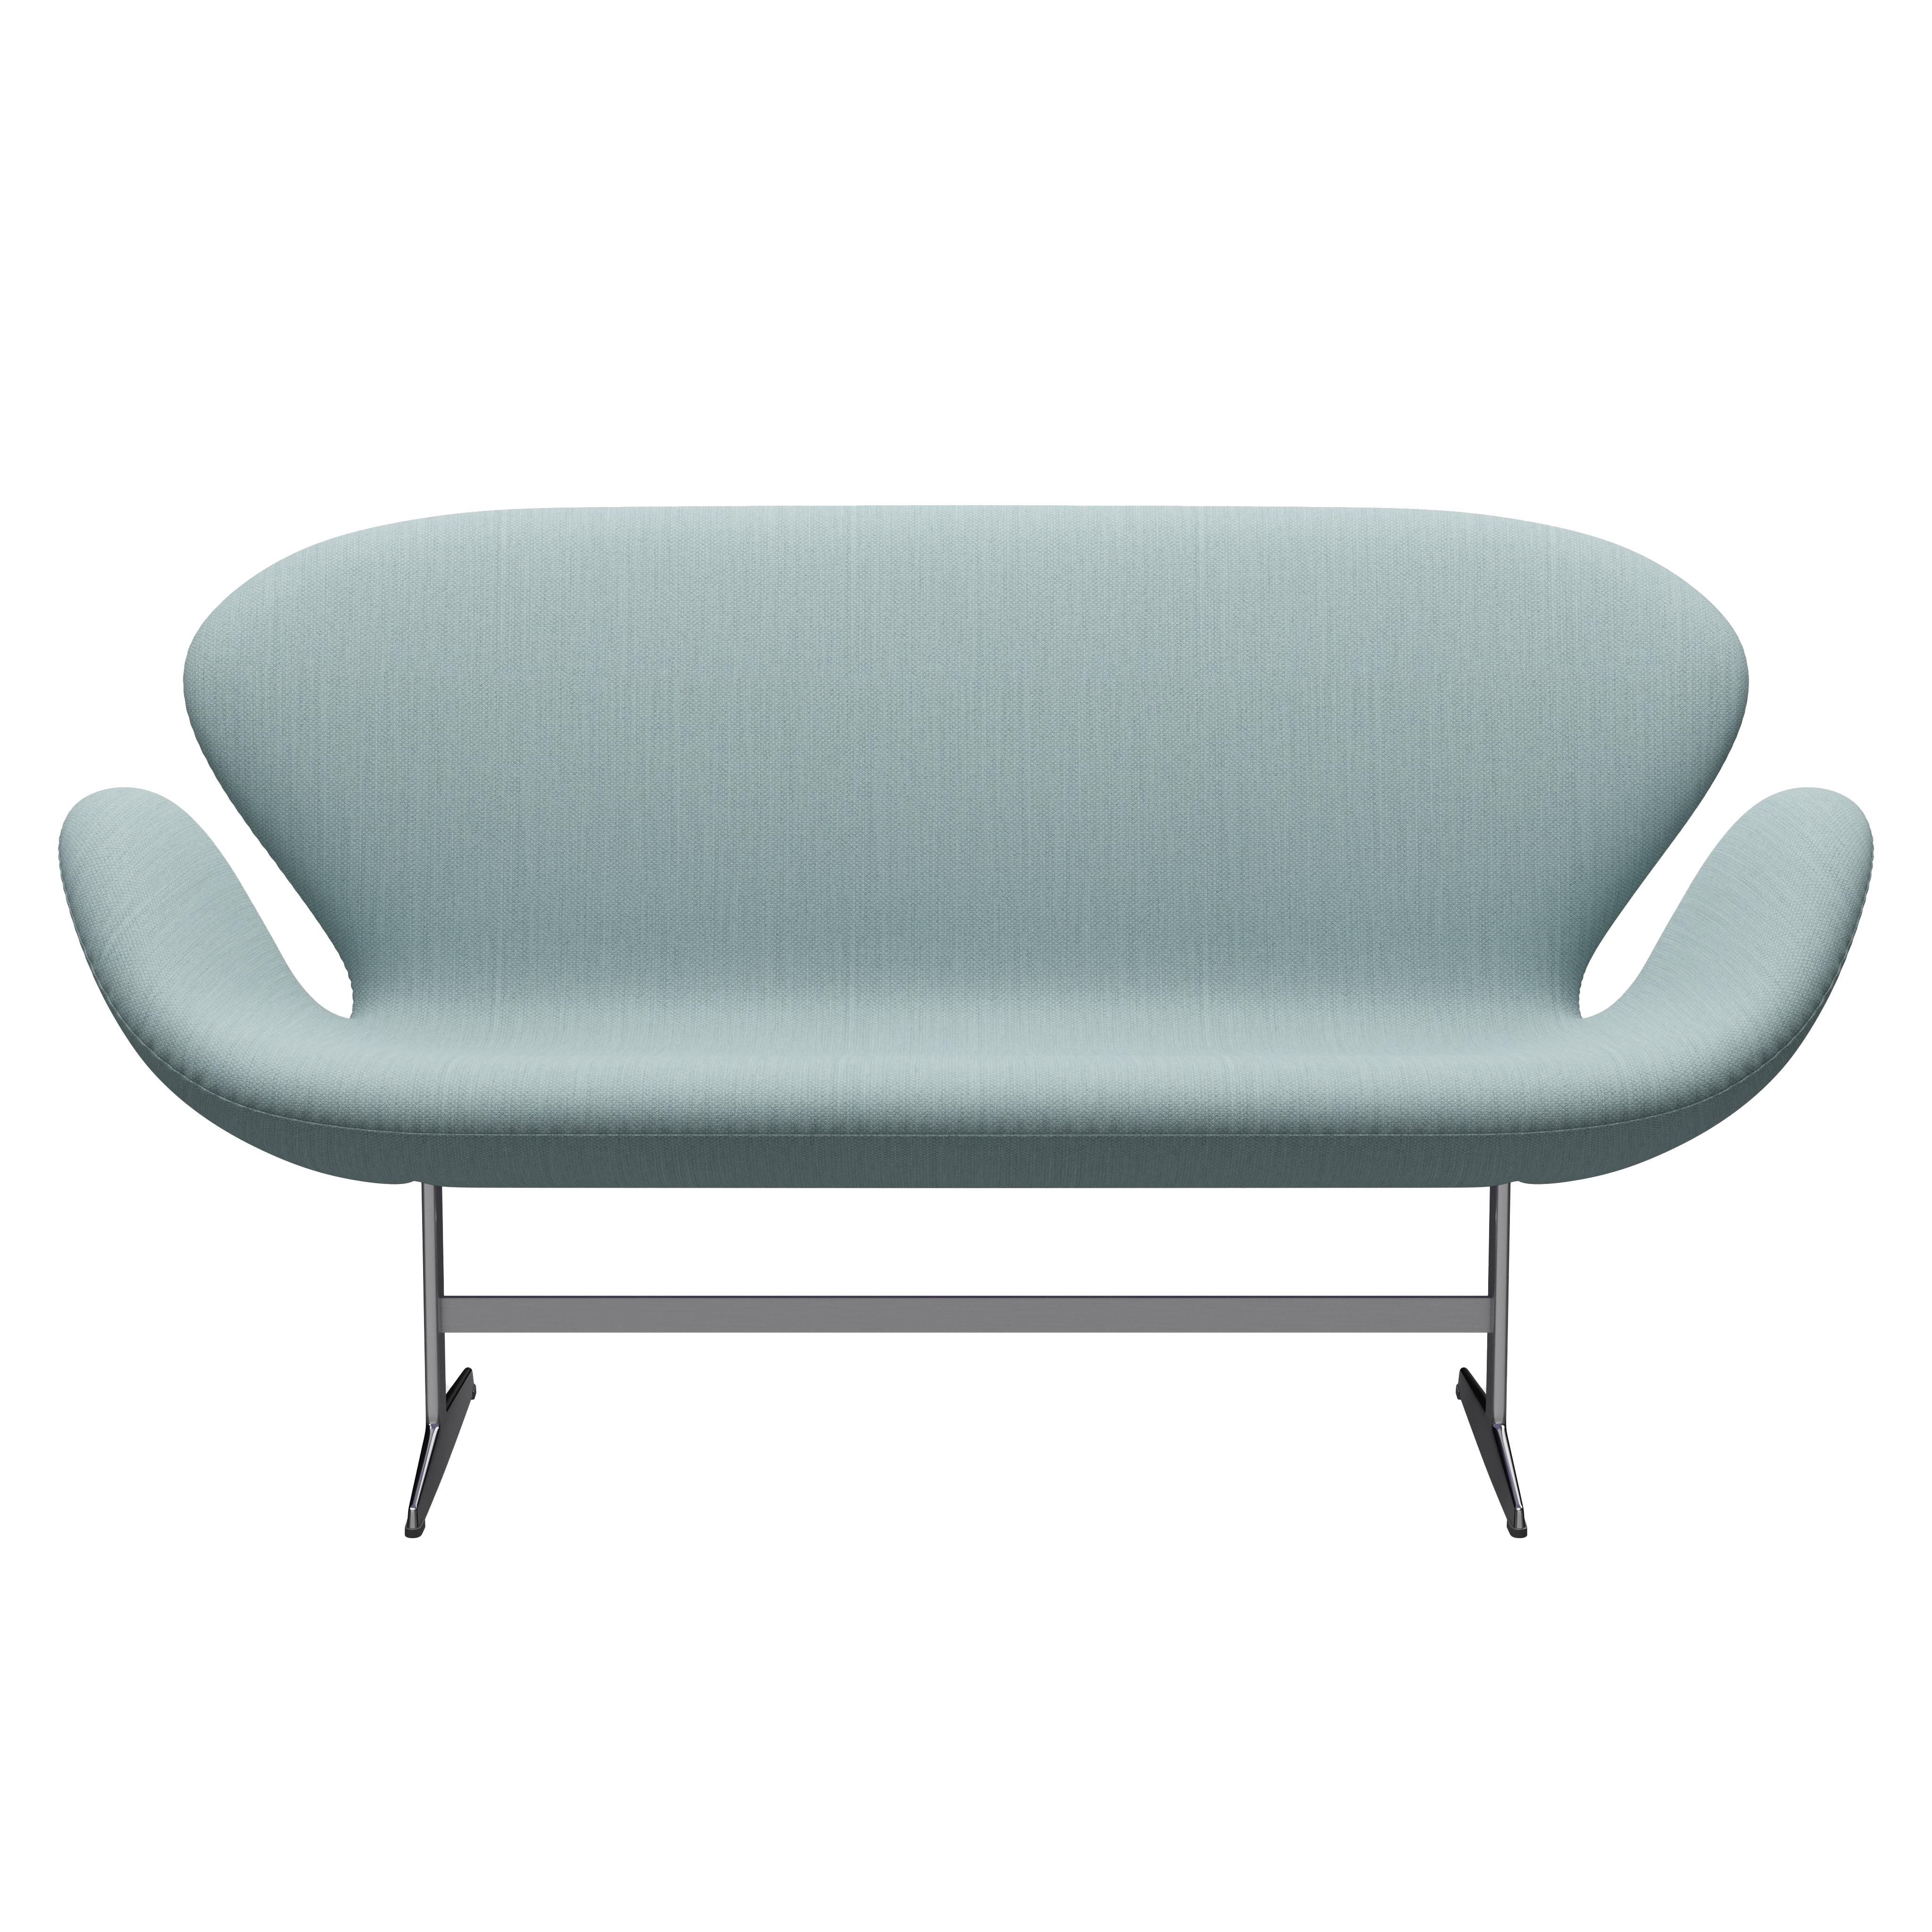 Arne Jacobsen 'Swan' Sofa for Fritz Hansen in Fabric Upholstery (Cat. 2) For Sale 1